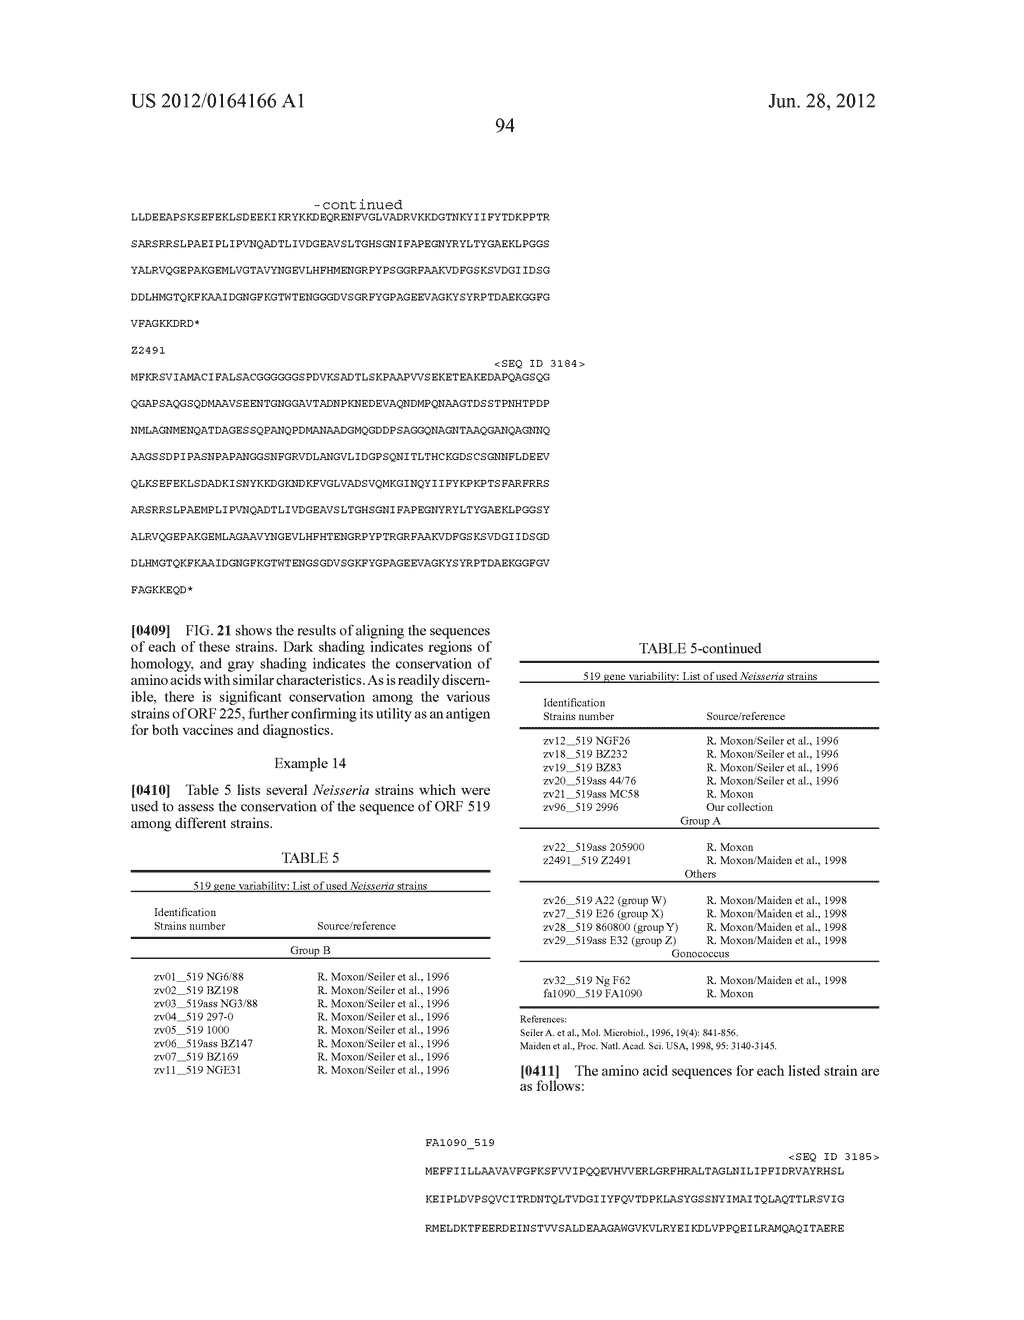 NEISSERIA MENINGITIDIS ANTIGENS AND COMPOSITIONS - diagram, schematic, and image 126